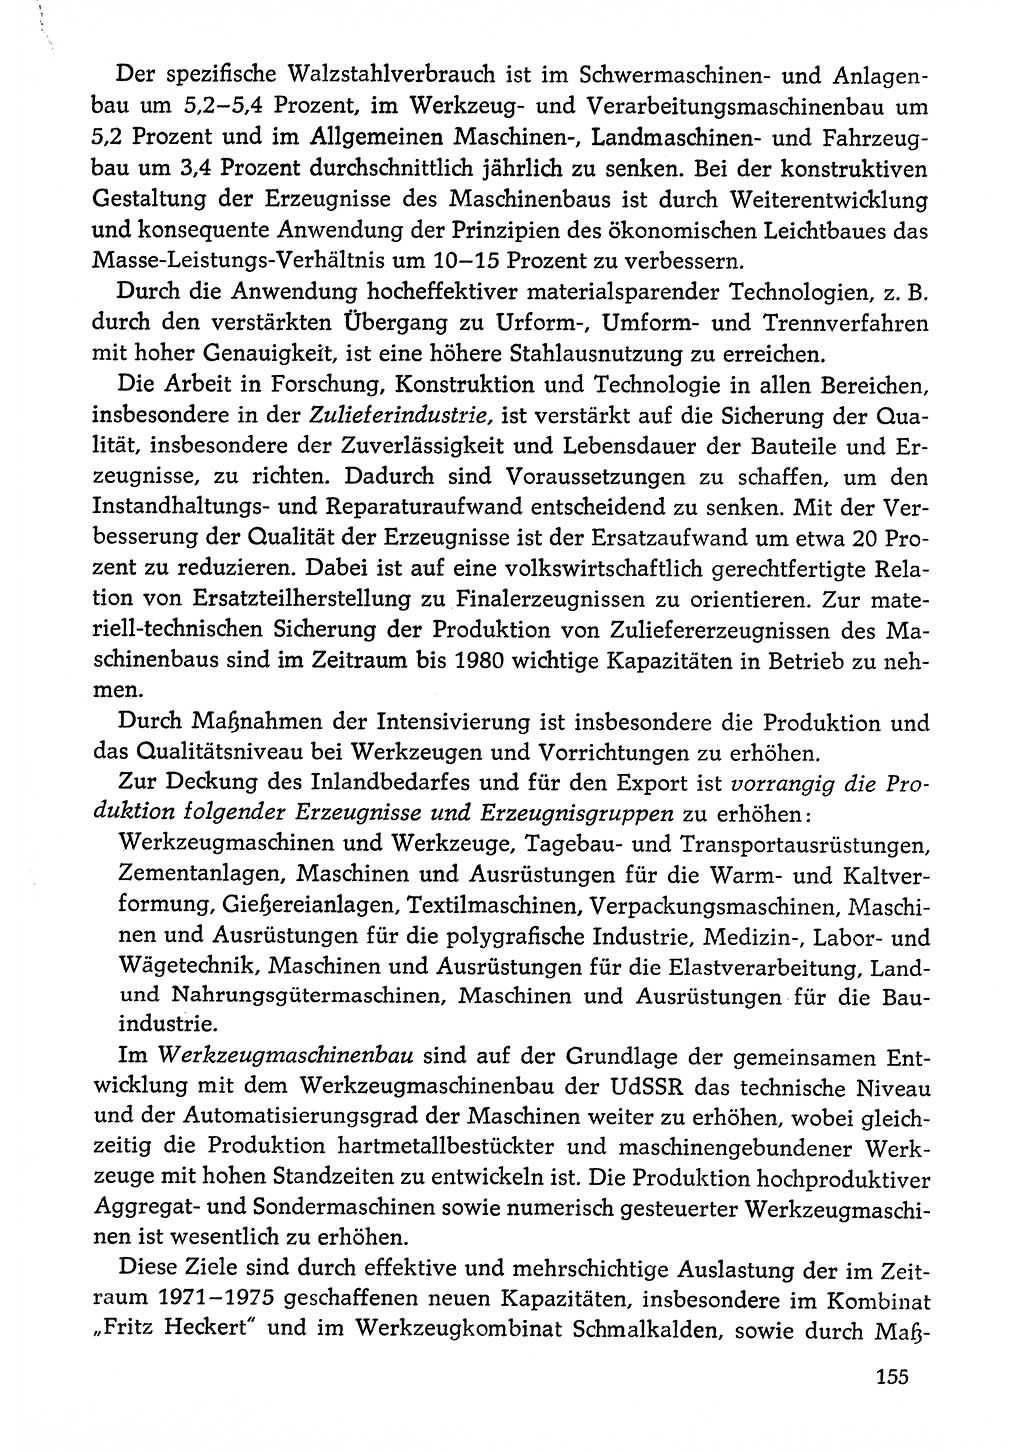 Dokumente der Sozialistischen Einheitspartei Deutschlands (SED) [Deutsche Demokratische Republik (DDR)] 1976-1977, Seite 155 (Dok. SED DDR 1976-1977, S. 155)